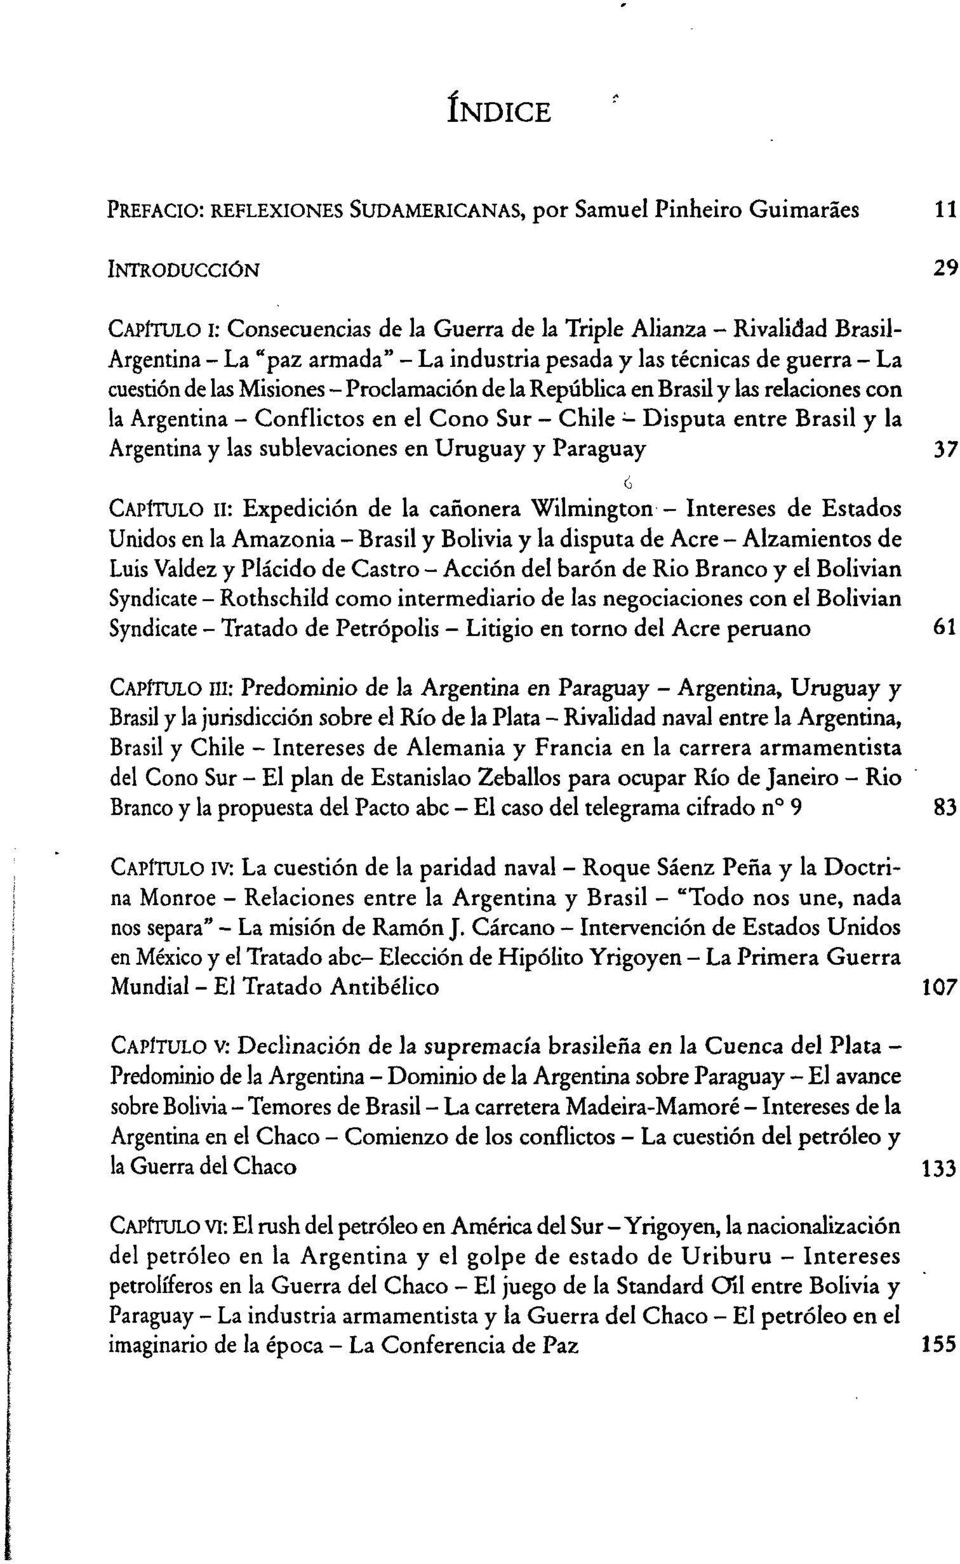 Disputa entre Brasil y la Argentina y las sublevaciones en Uruguay y Paraguay 37 CAPÍTULO II: Expedición de la cañonera Wilmington - Intereses de Estados Unidos en la Amazonia - Brasil y Bolivia y la